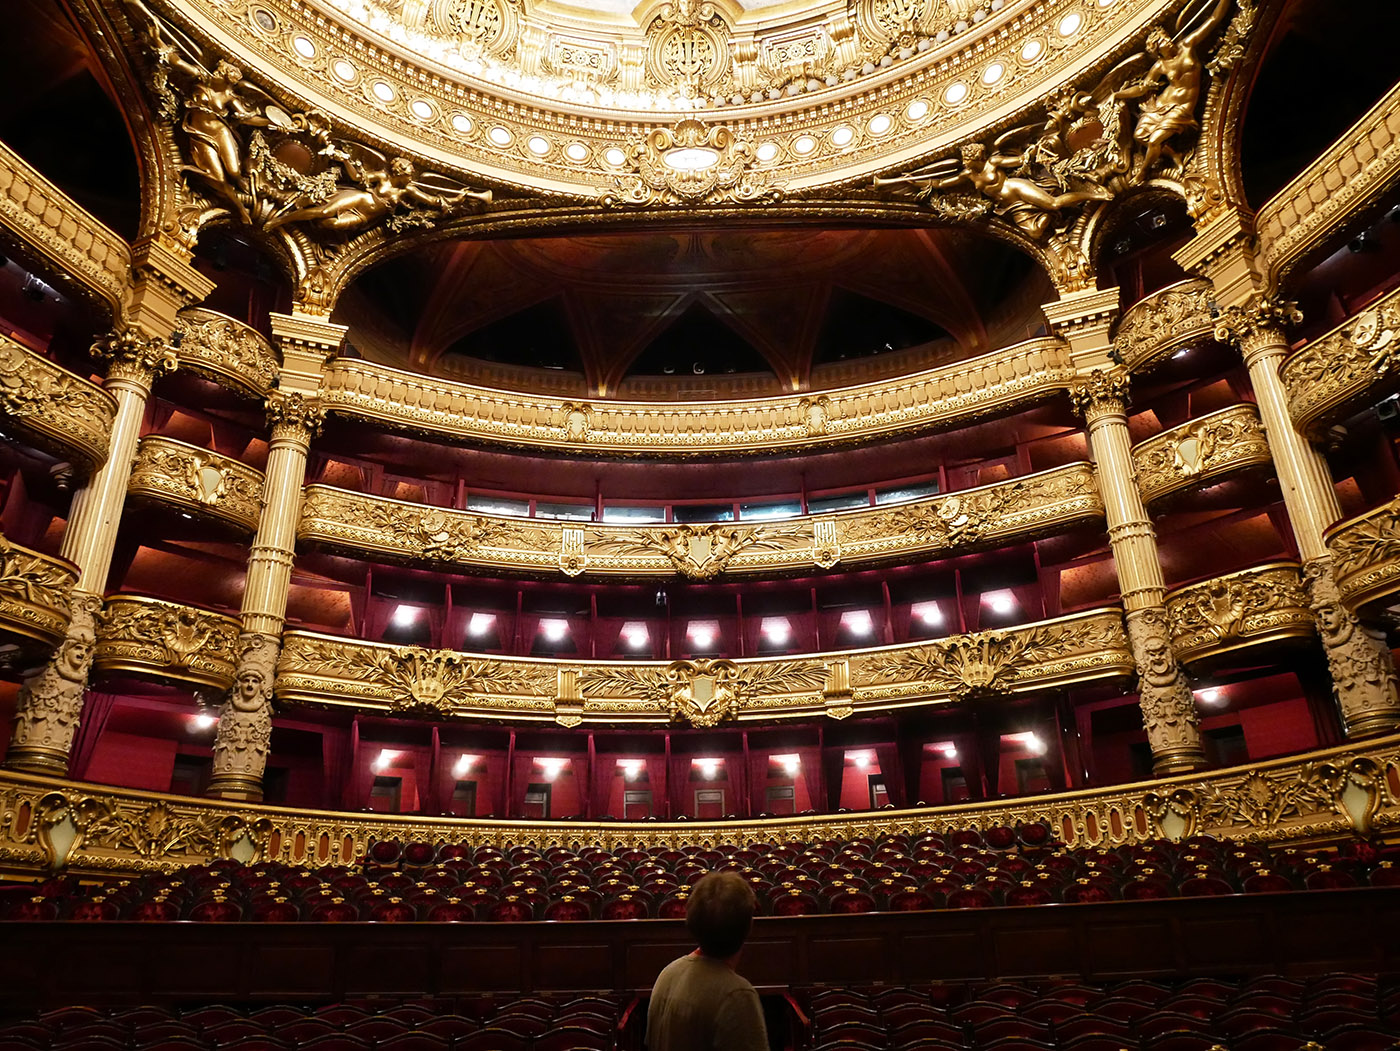 Опера в театре. Театральный зал оперы Гарнье. Опера Гарнье занавес. Балет Гранд опера Париж. Зал Гранд опера в Париже.